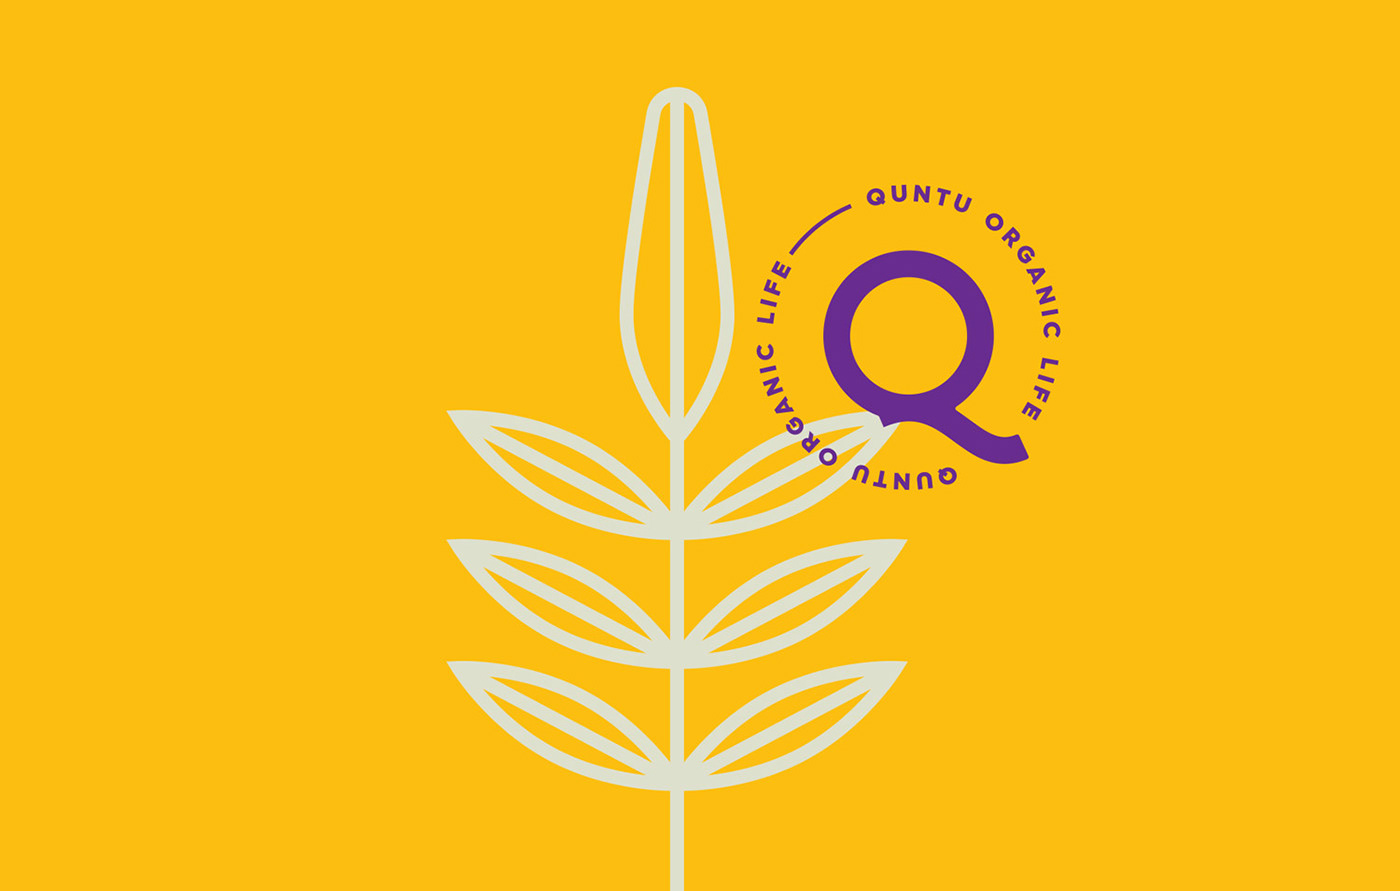 Packaging design branding  organic Food  product design  logo purple Ecuador quinoa